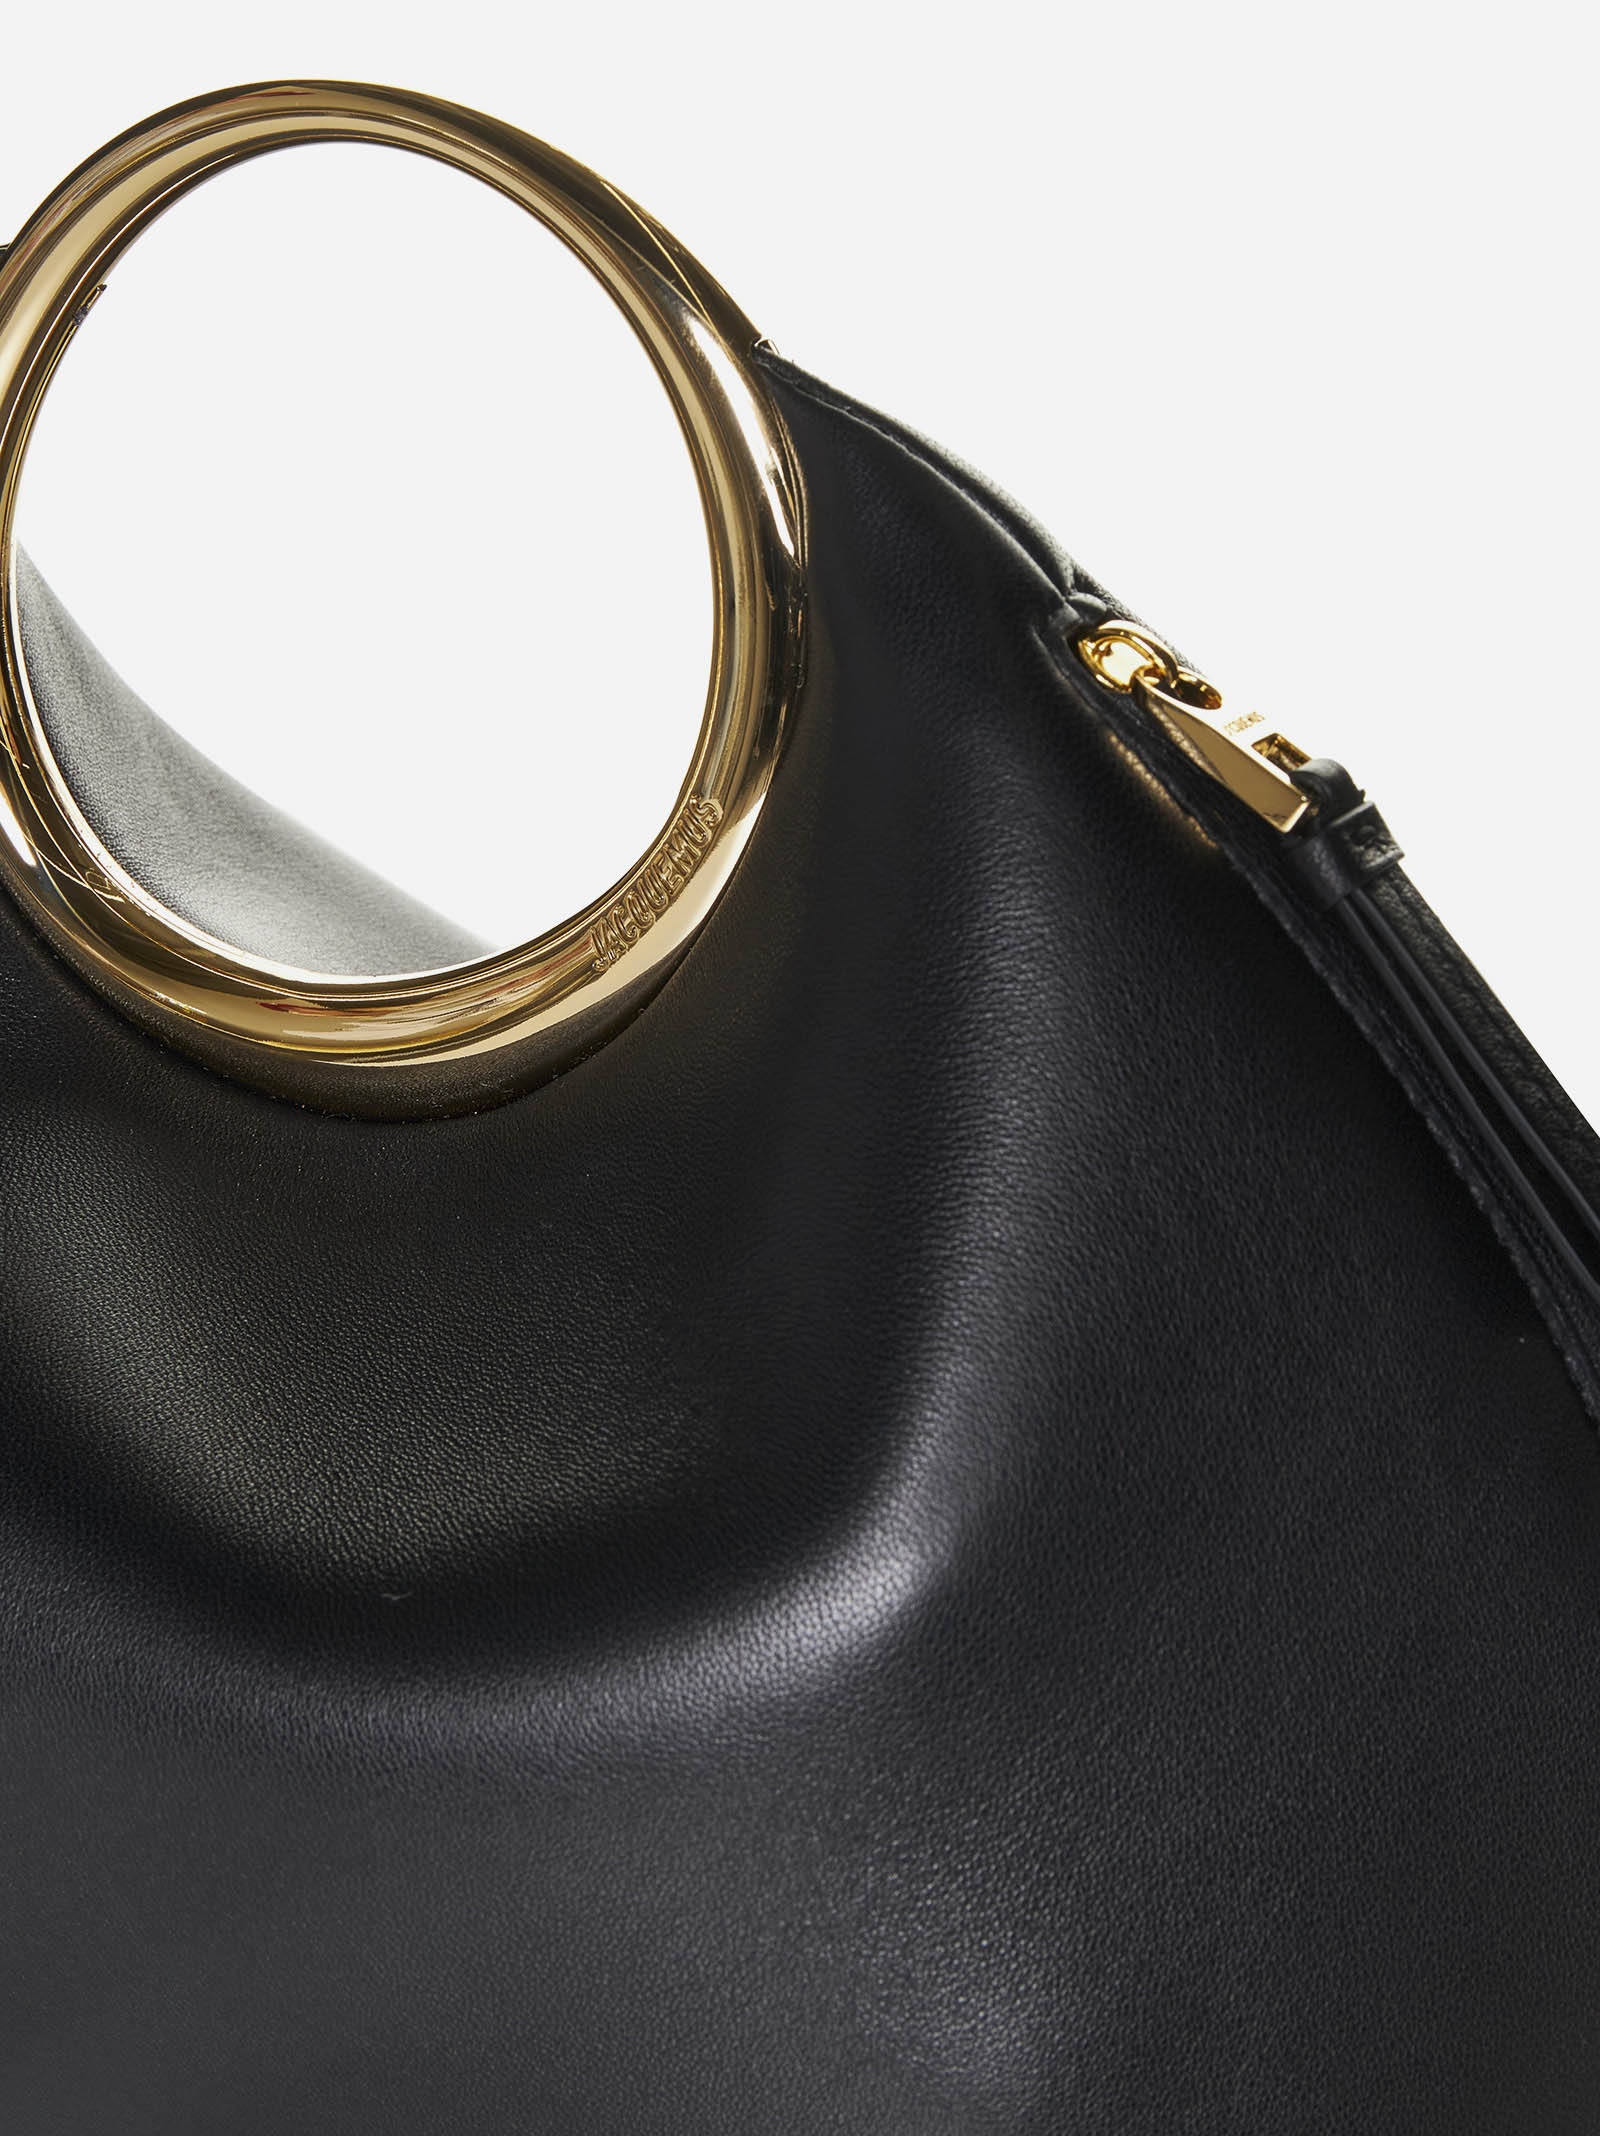 Le Calino leather bag - 5